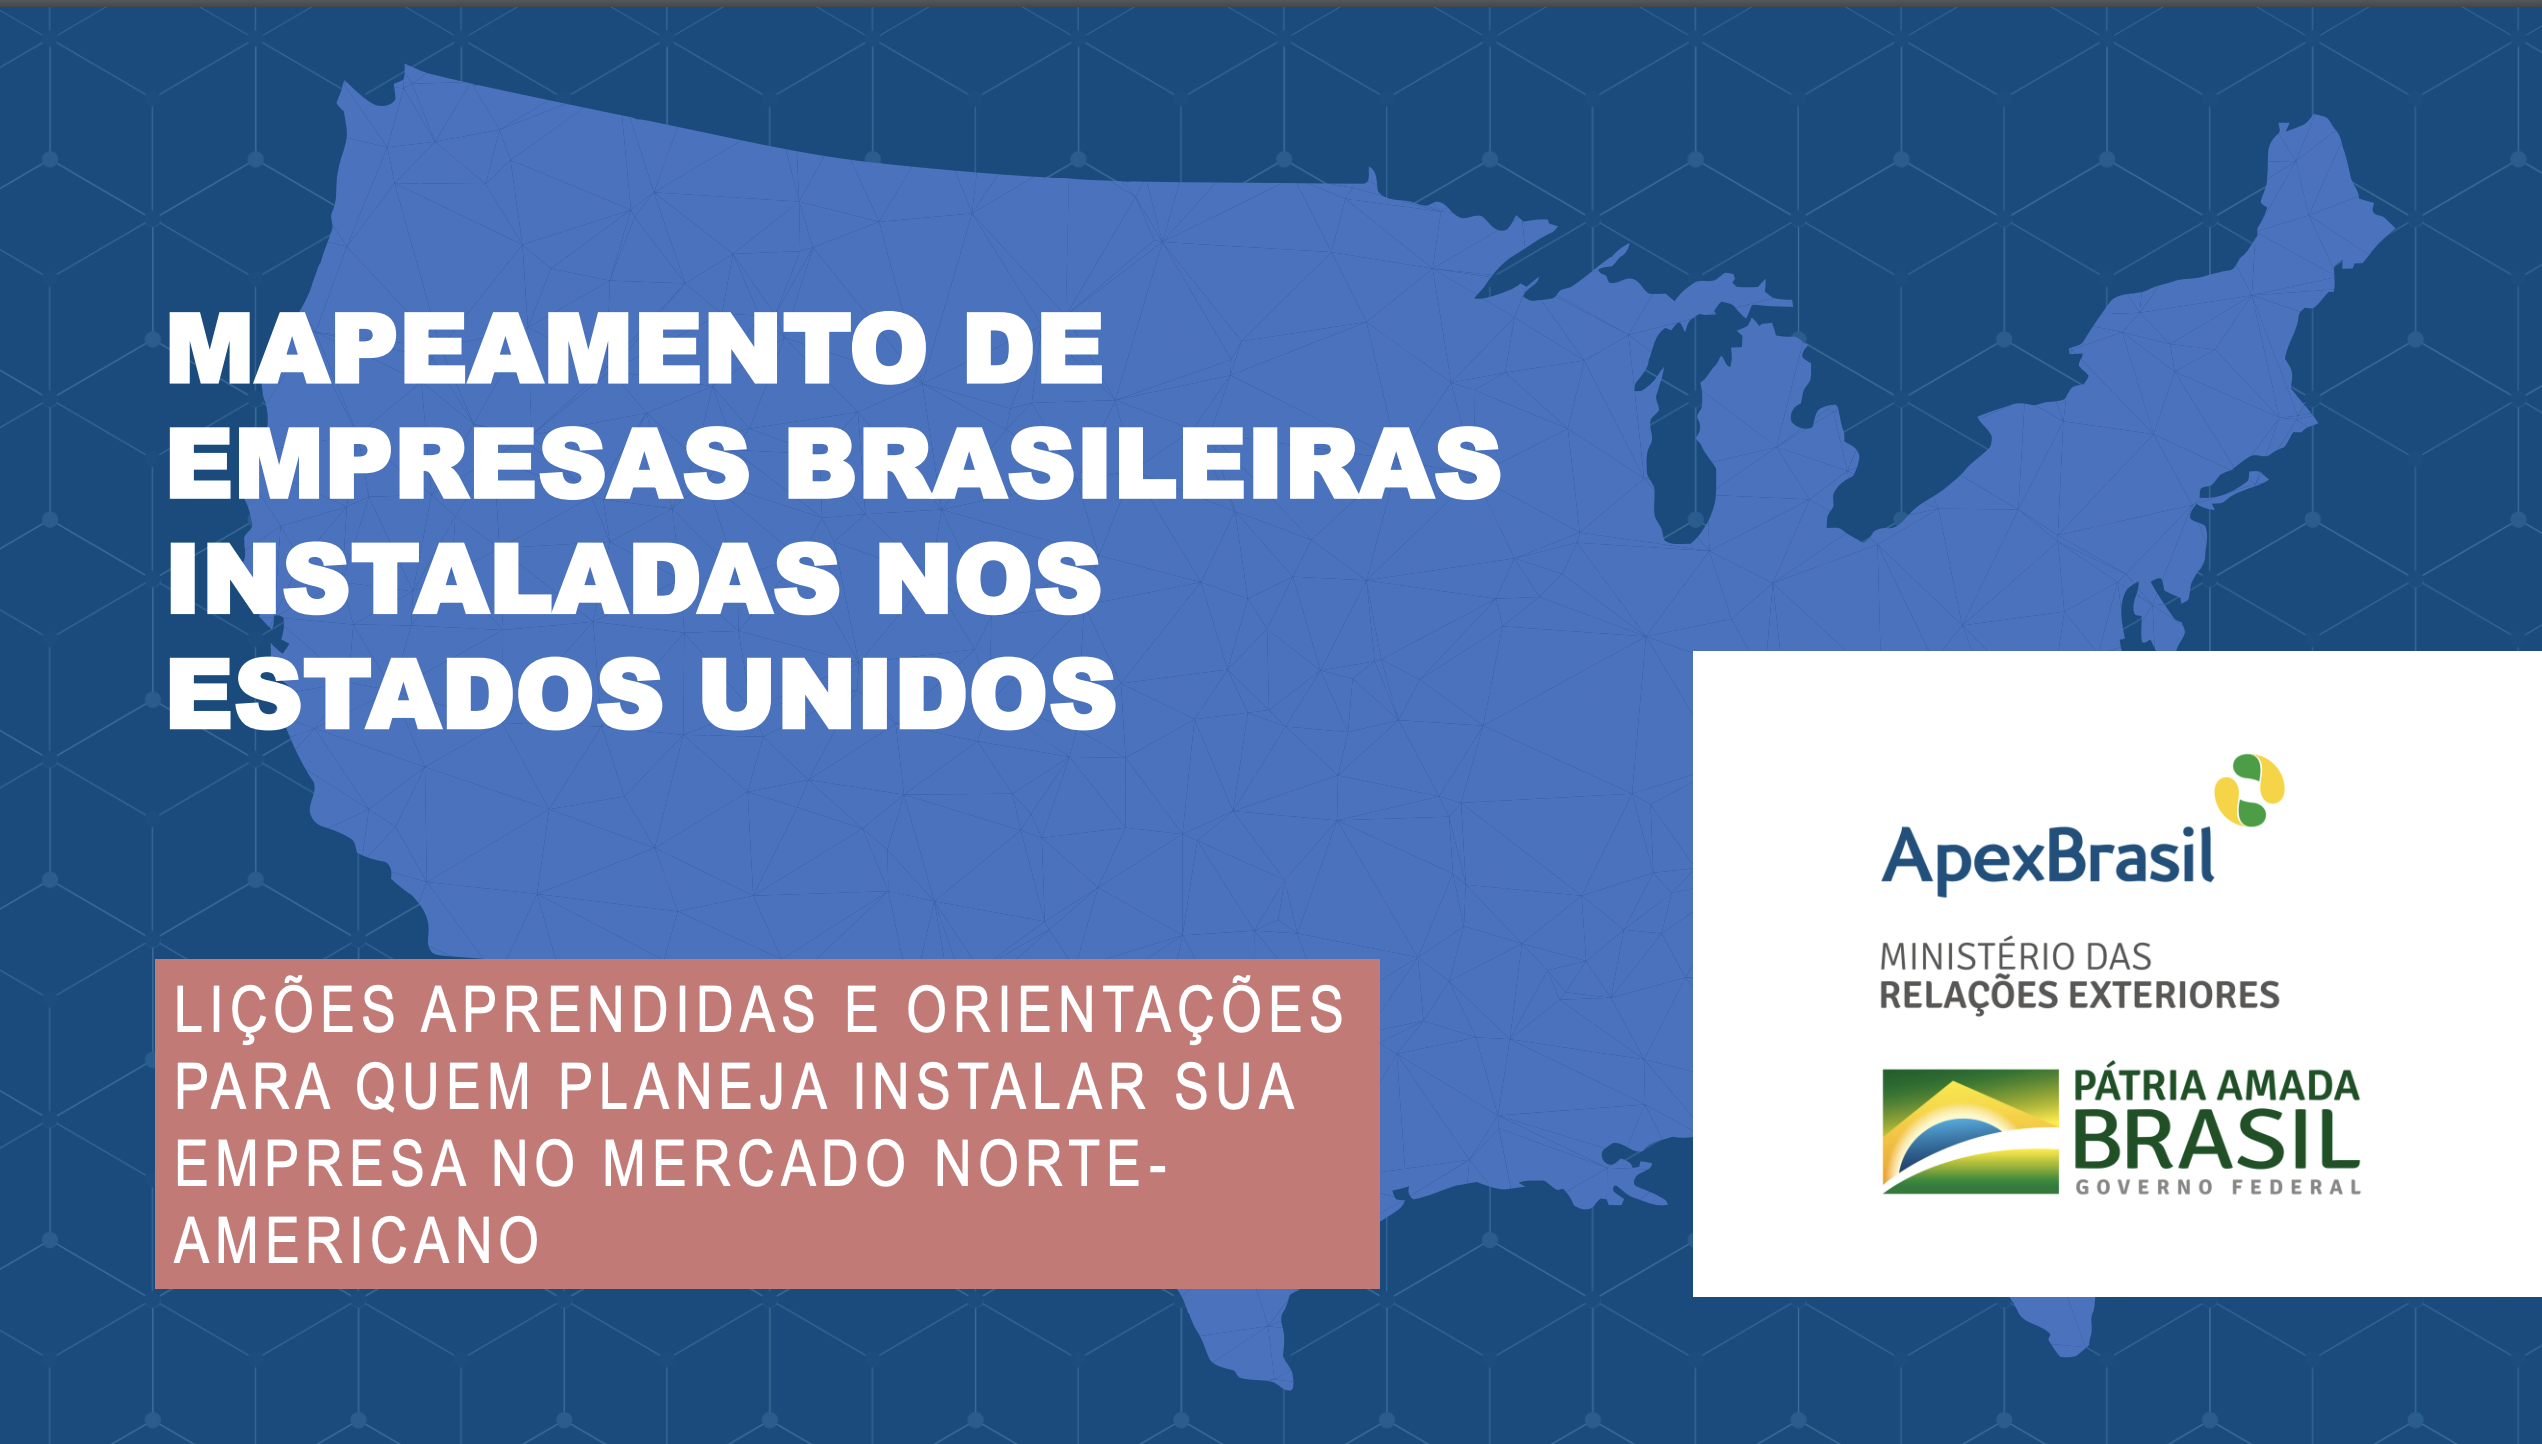 Apex-Brasil organiza Seminário Empresarial Brasil-EUA na Flórida - Apex- Brasil